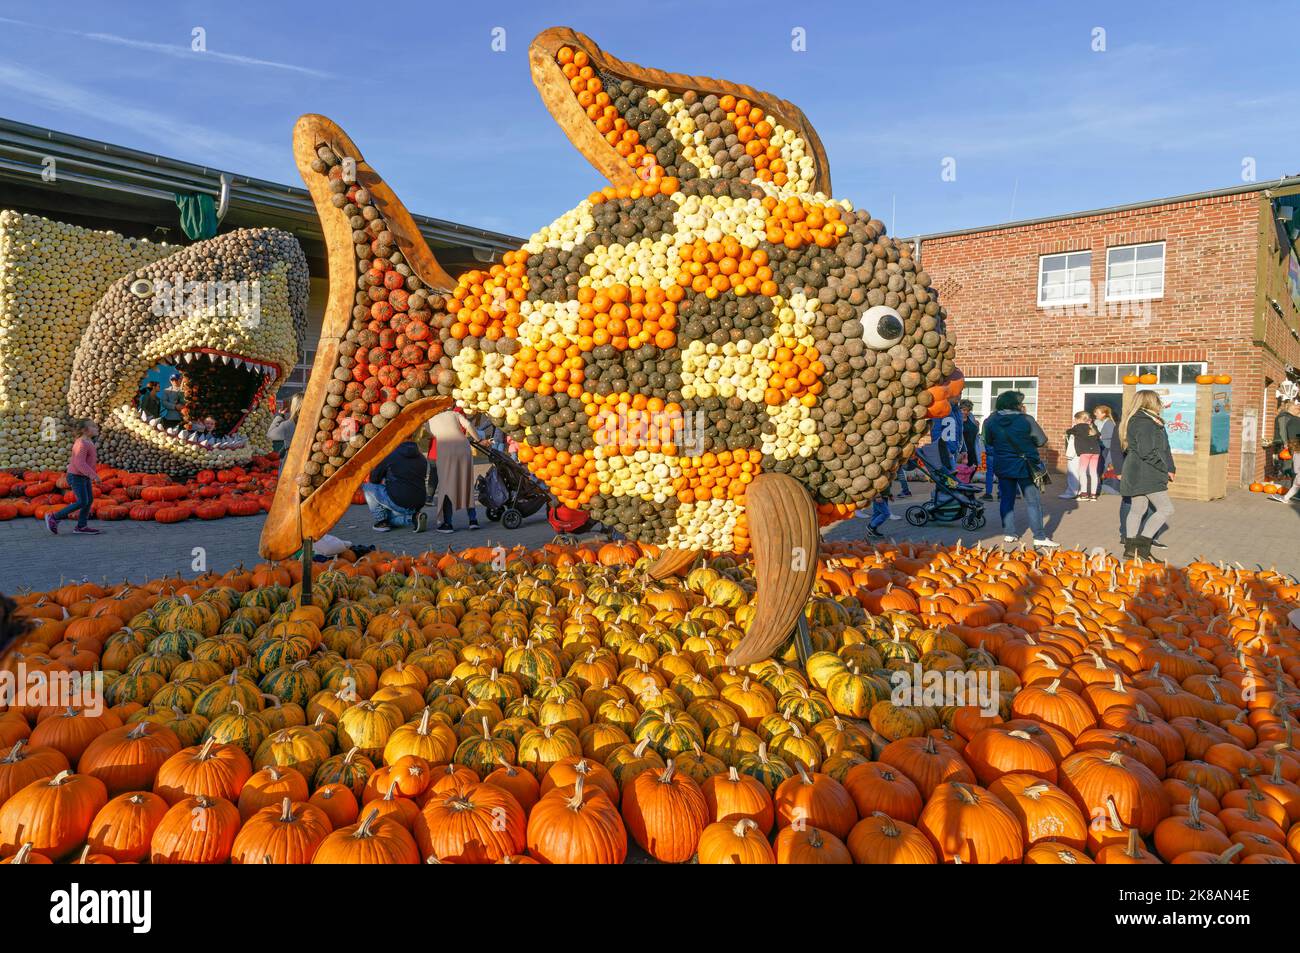 Herbstmarkt auf dem Spargelhof in Klaistow, Kürbismarkt, Bauernhof, Banque D'Images